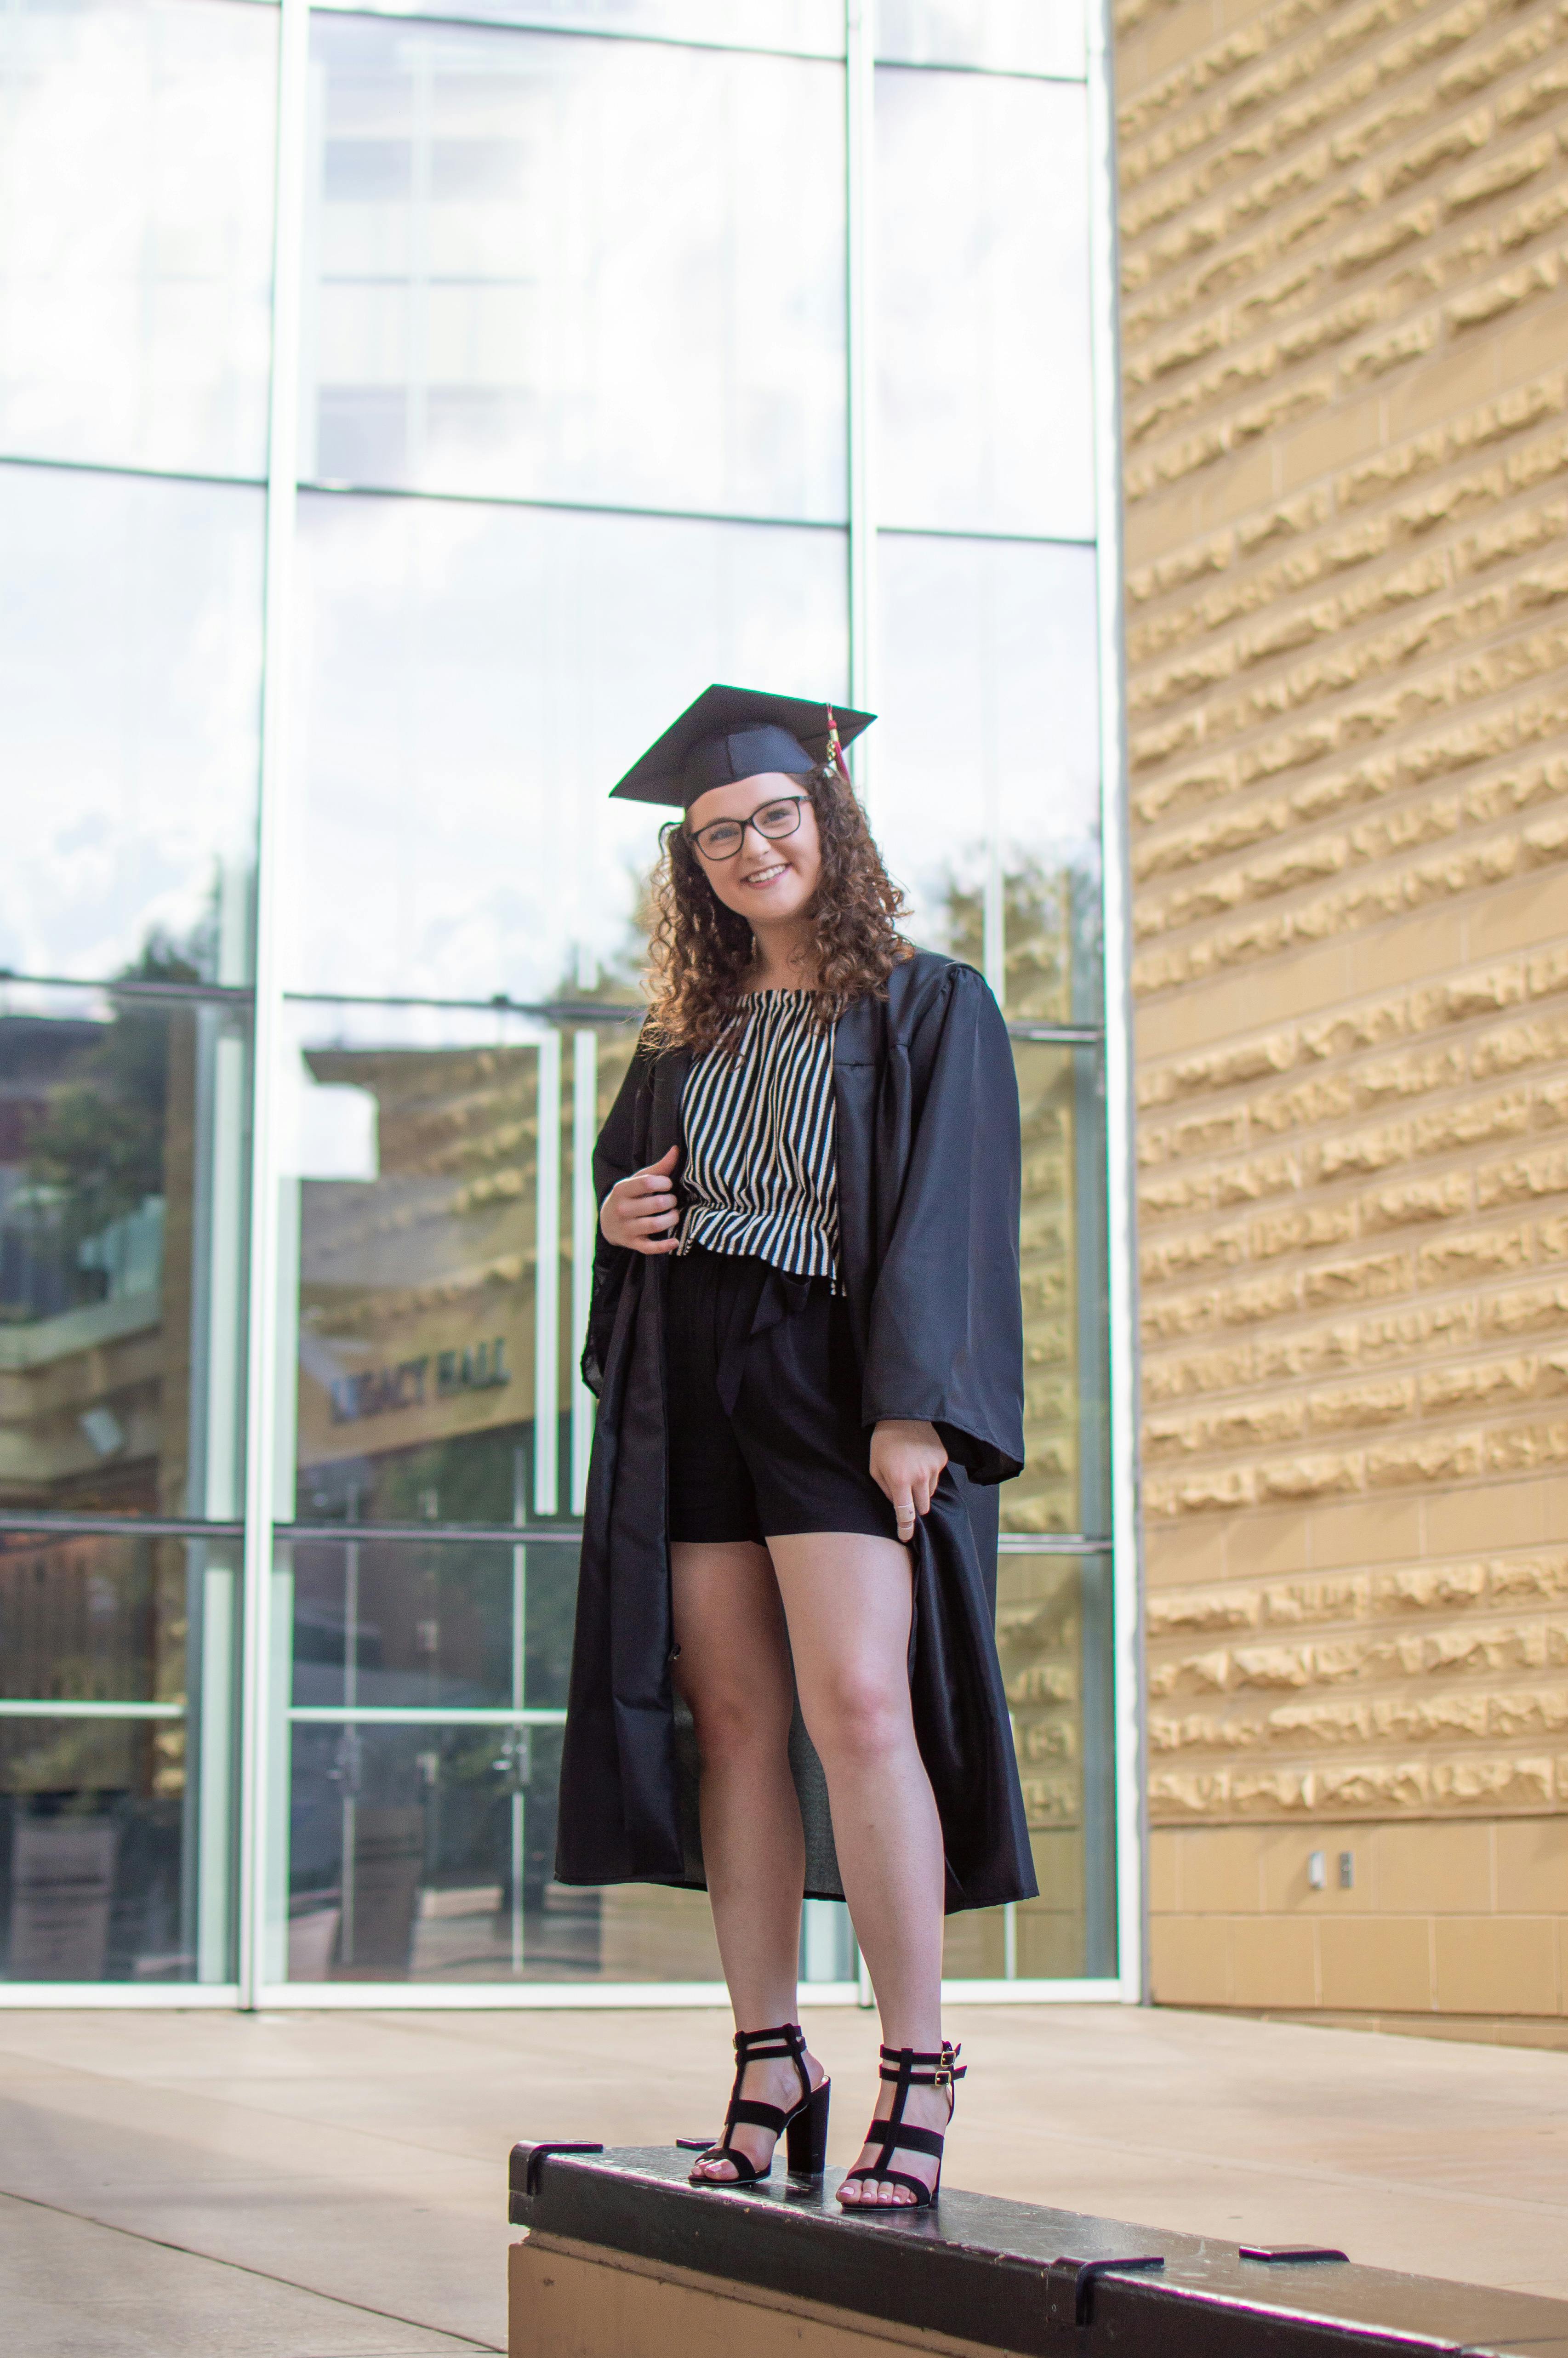 Graduada universitaria posando | Foto: Pexels